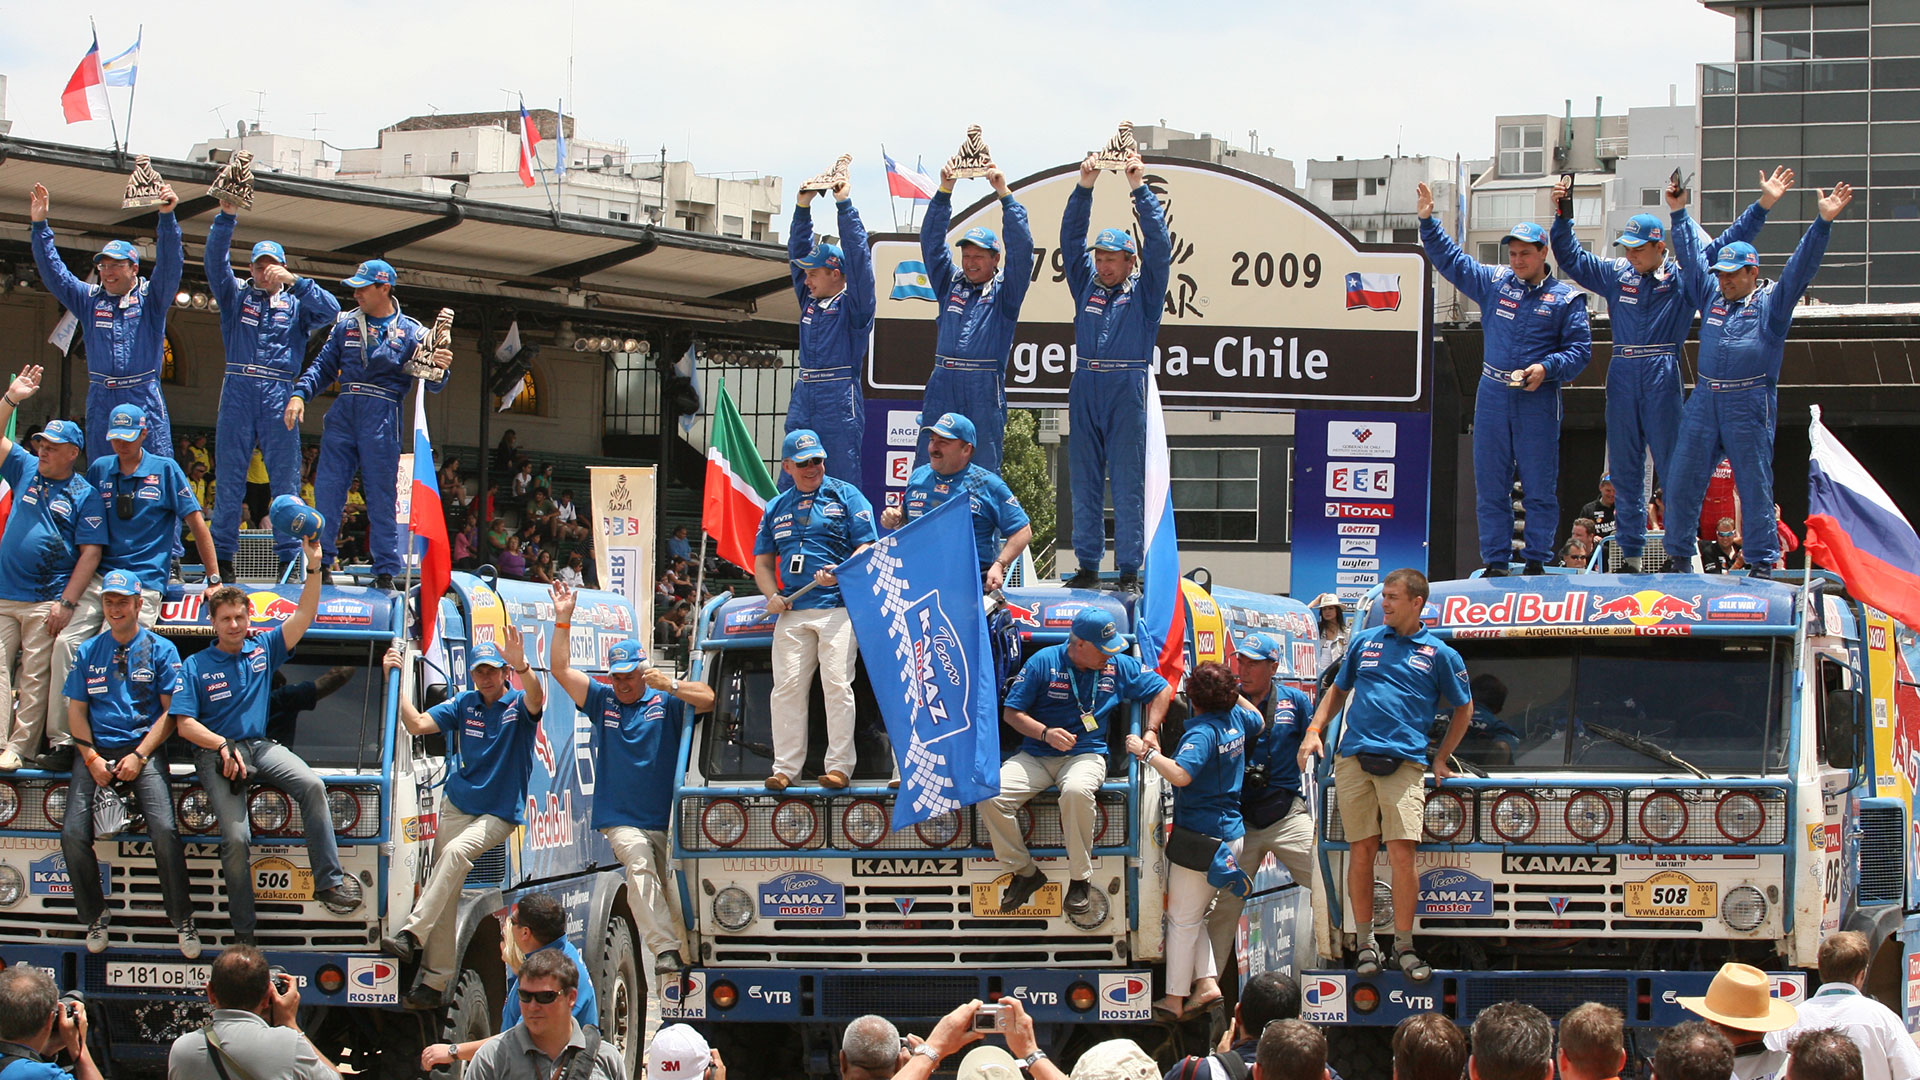 1-2-3 de los rusos en el Rally Dakar 2009 Argentina-Chile. En la imagen el podio que se armó en el predio de La Rural de Palermo (Prensa Kamaz)